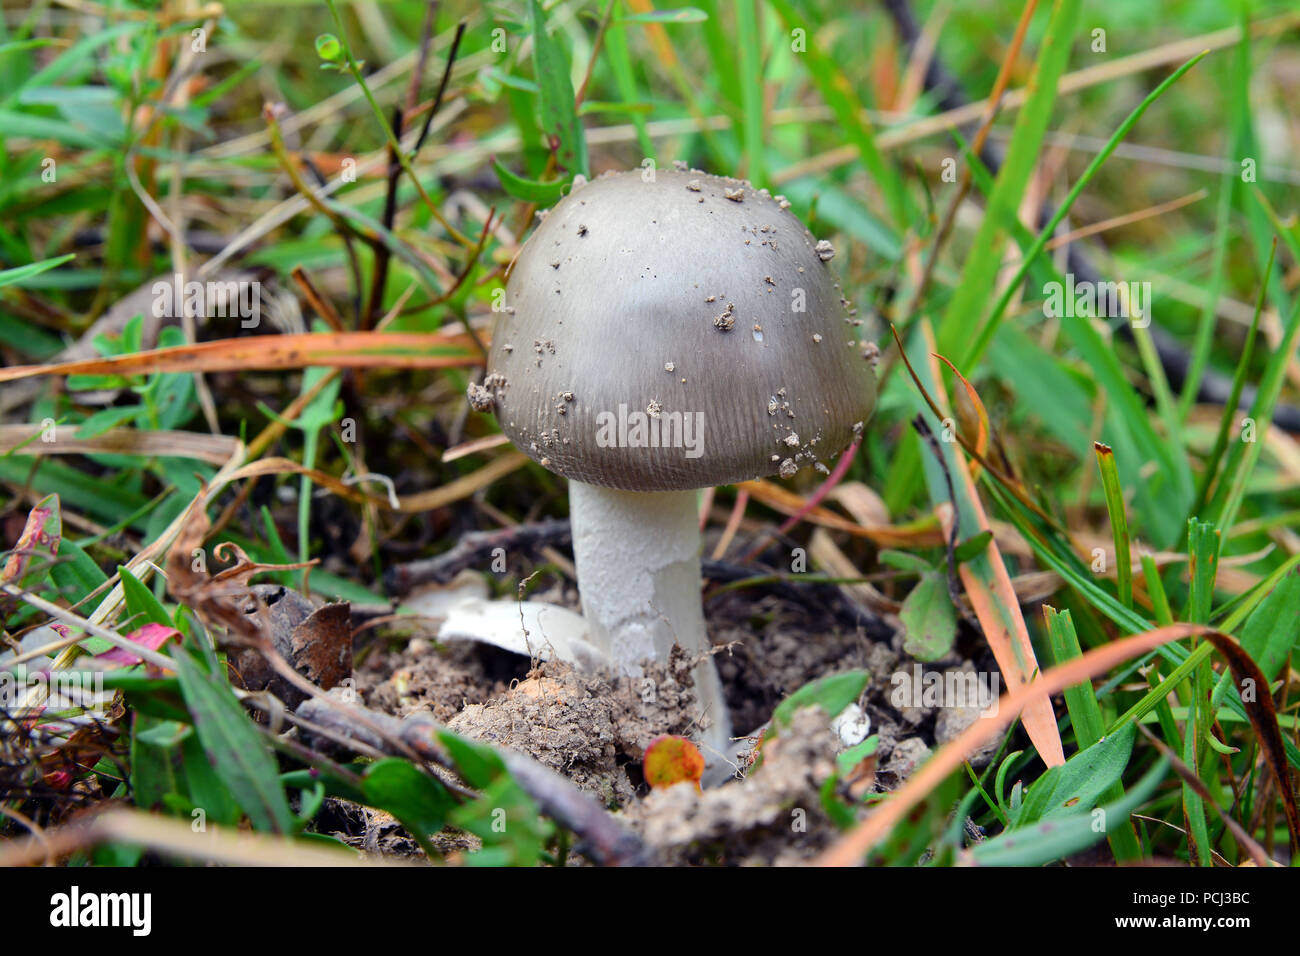 amanita mairei mushroom in the grass Stock Photo - Alamy